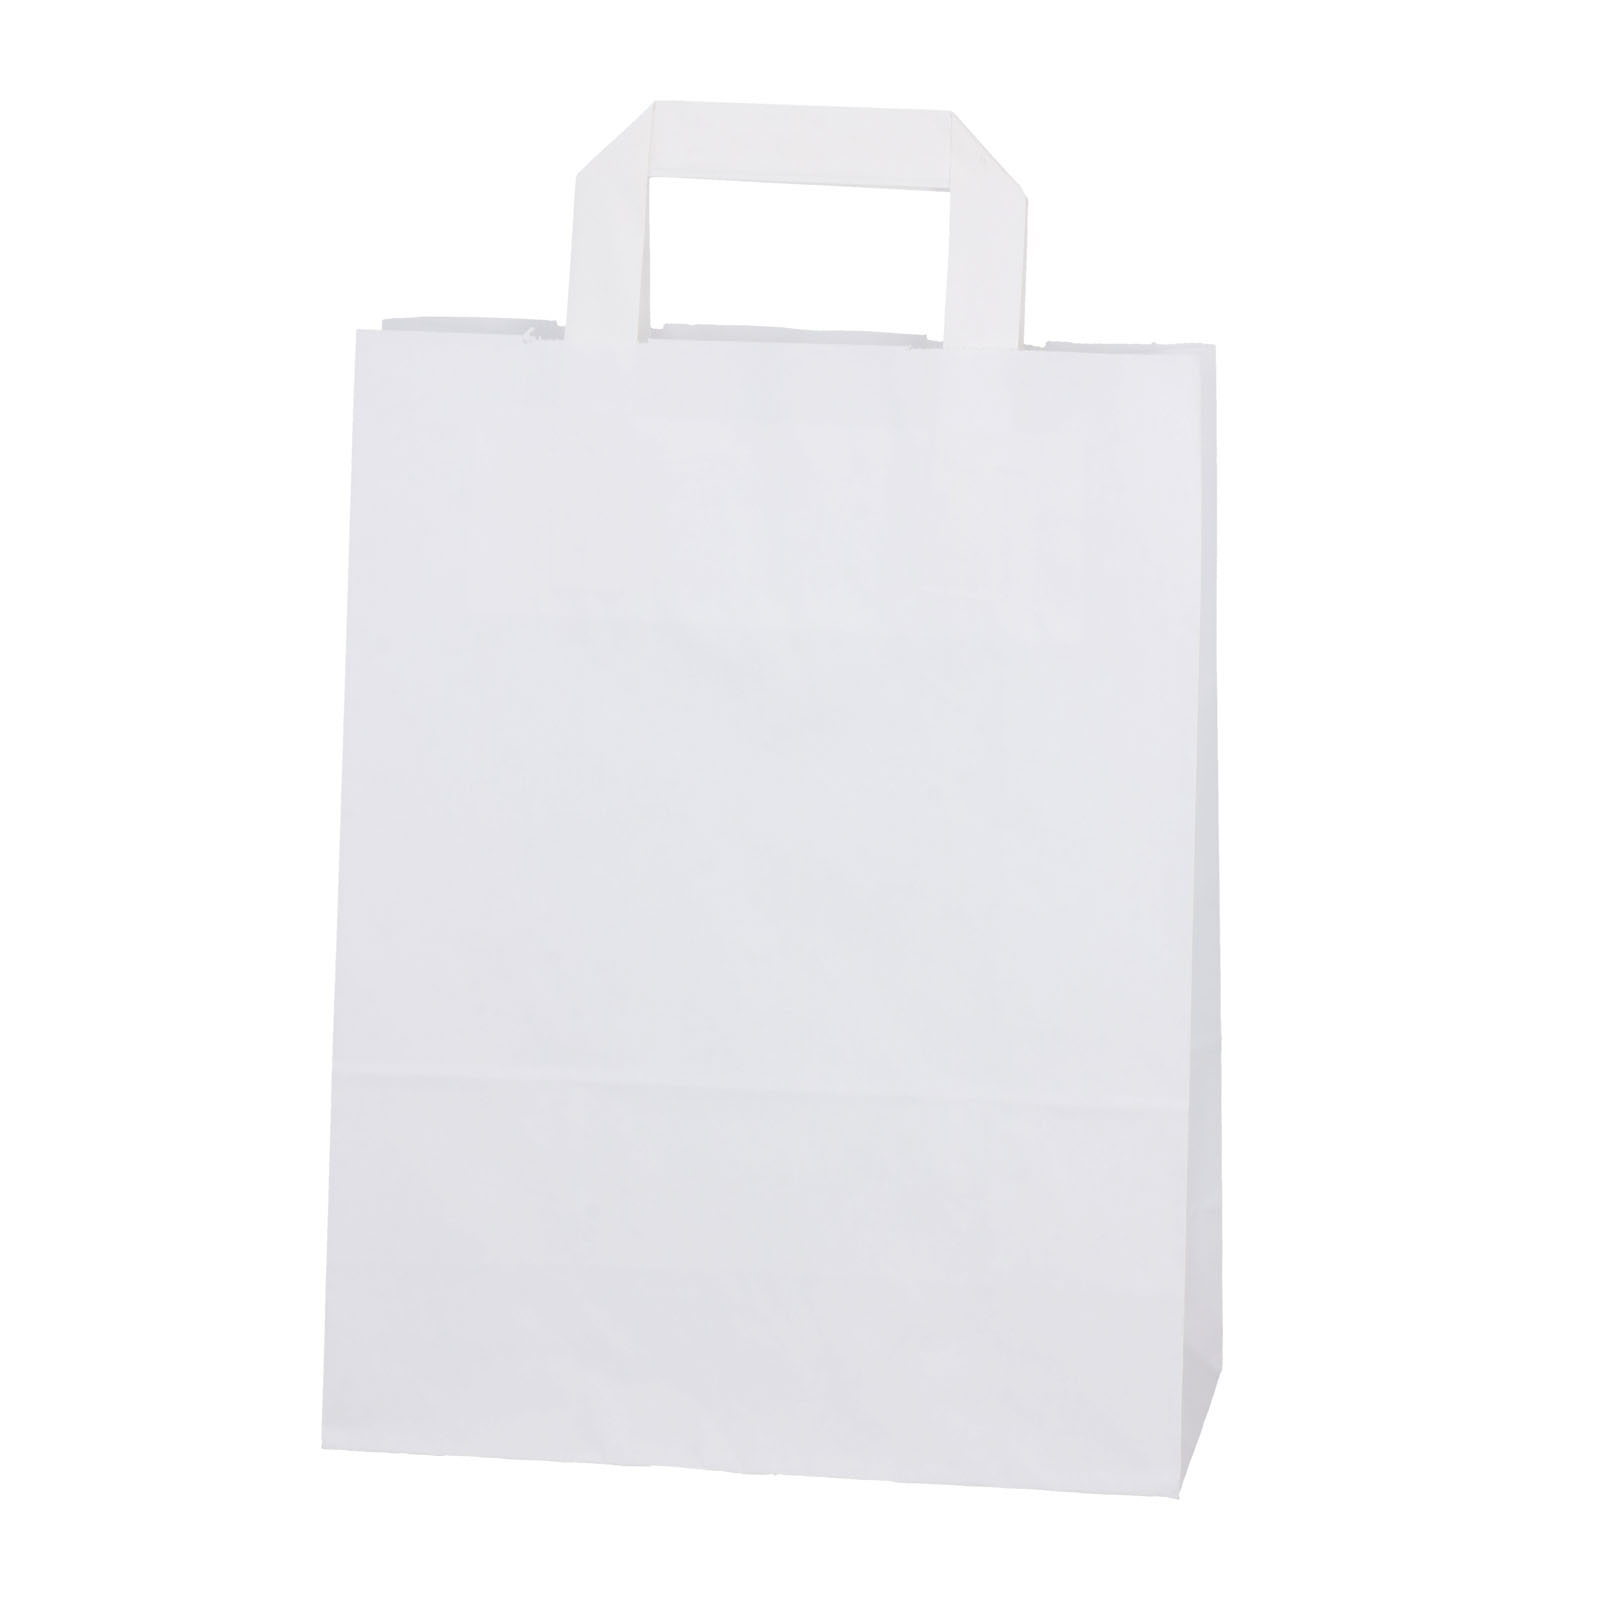 Пакет из крафт-бумаги белого цвета с плоской ручкой.